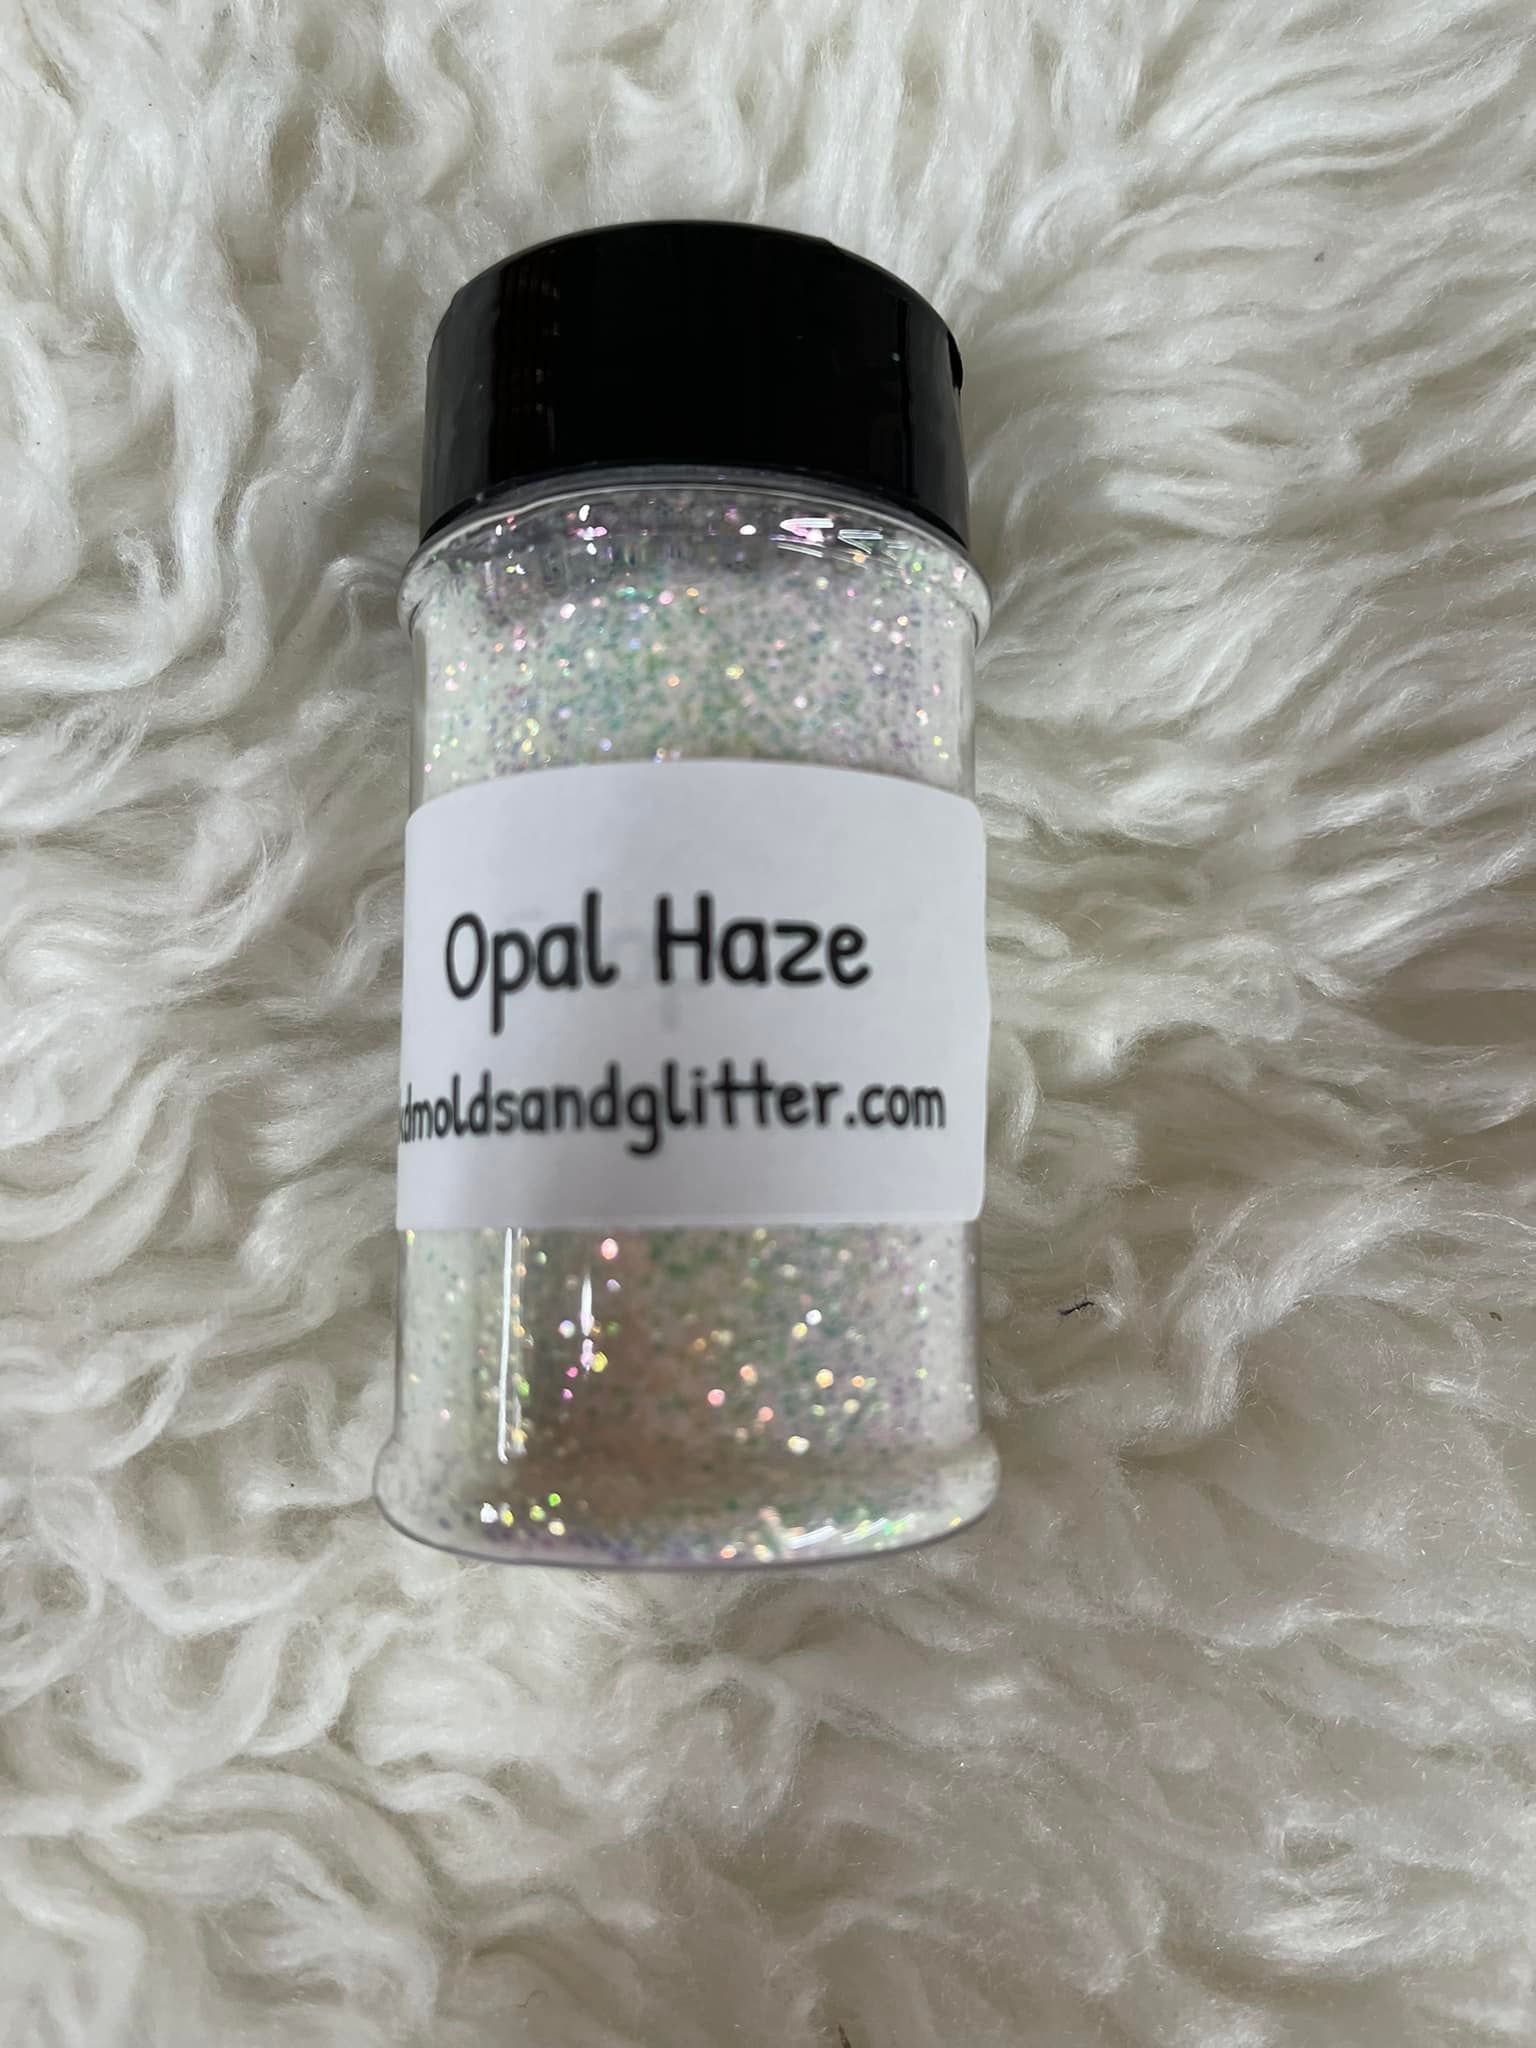 Opal Haze – CKD Molds & Creations